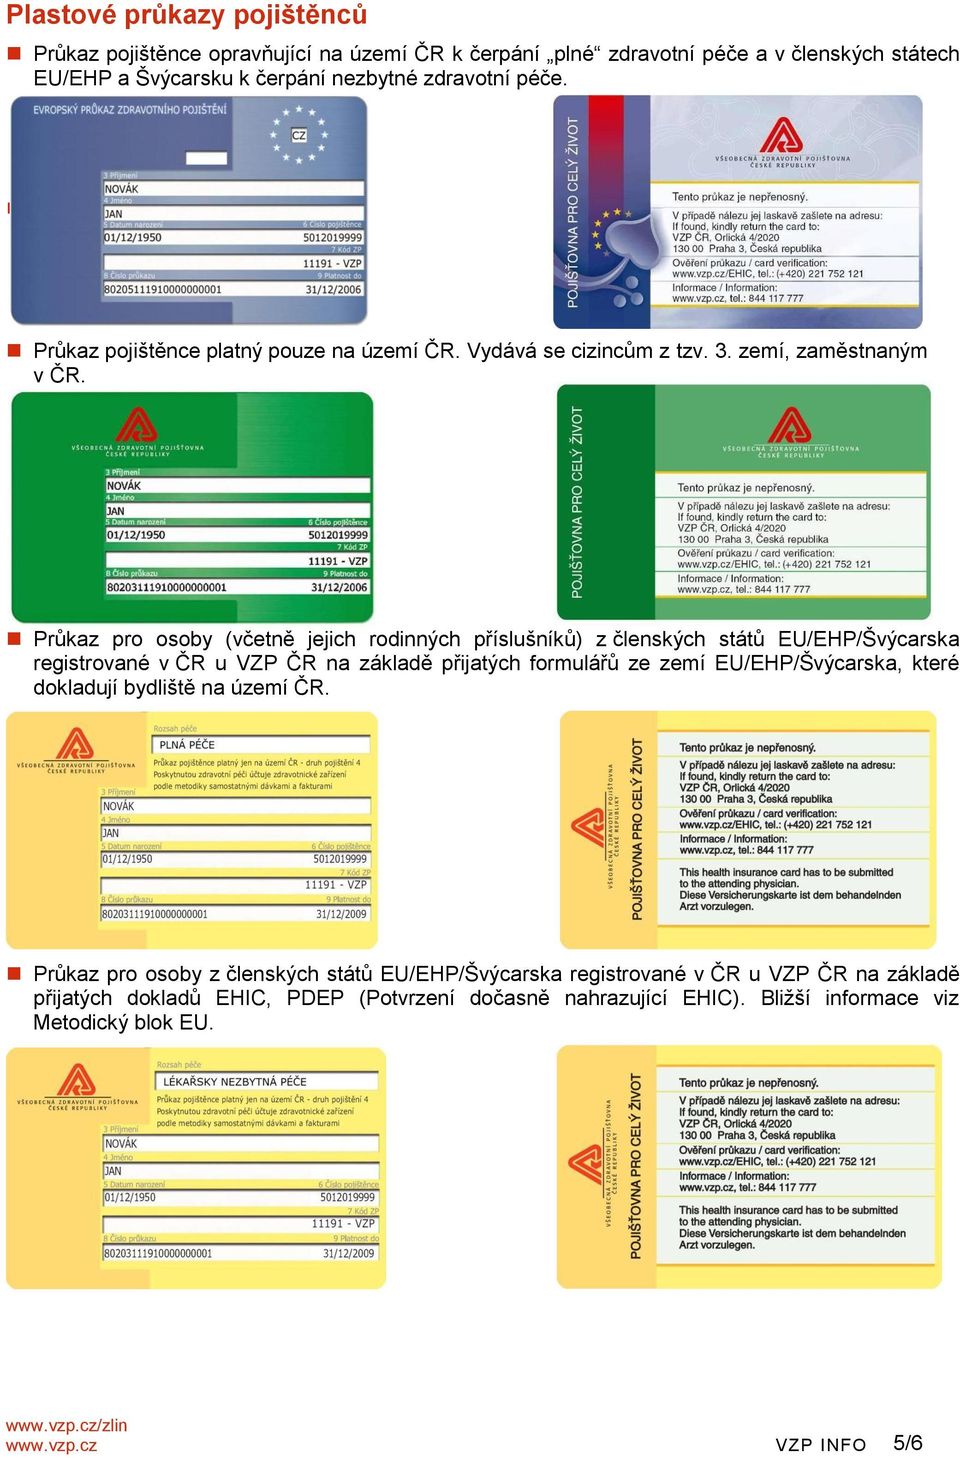 Průkaz pro osoby (včetně jejich rodinných příslušníků) z členských států EU/EHP/Švýcarska registrované v ČR u VZP ČR na základě přijatých formulářů ze zemí EU/EHP/Švýcarska, které